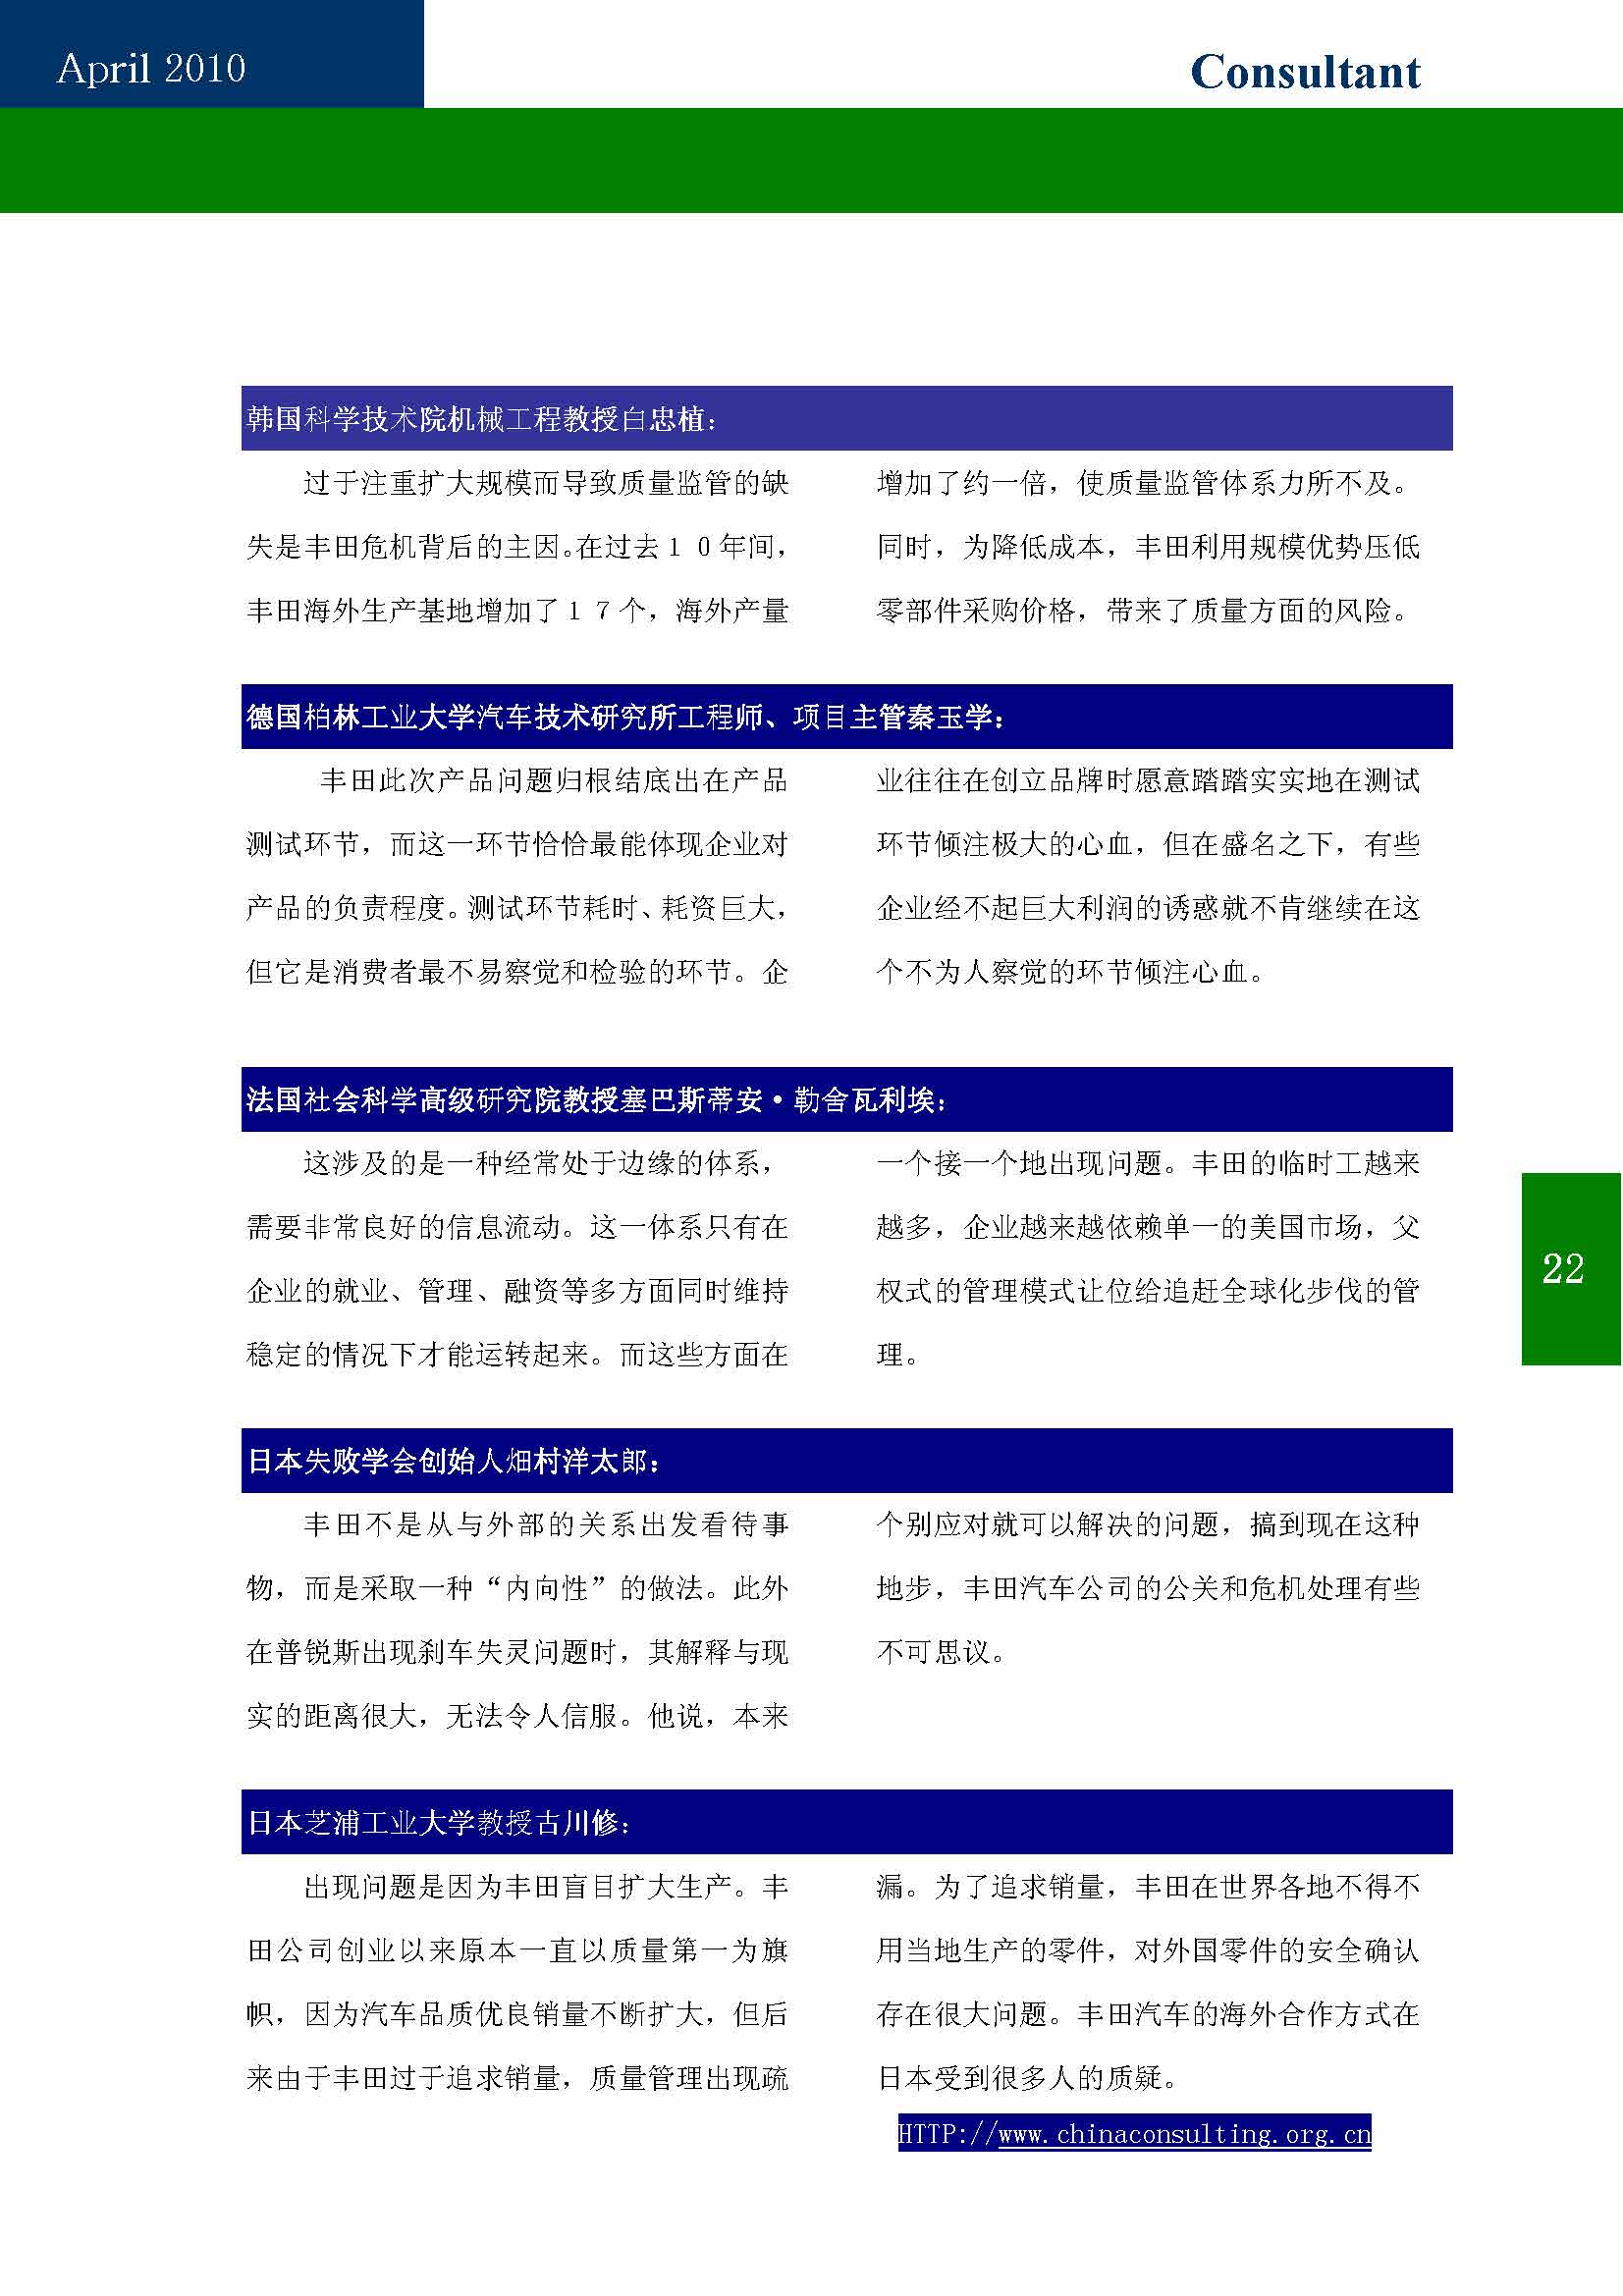 9中国科技咨询协会第九期会刊_页面_24.jpg